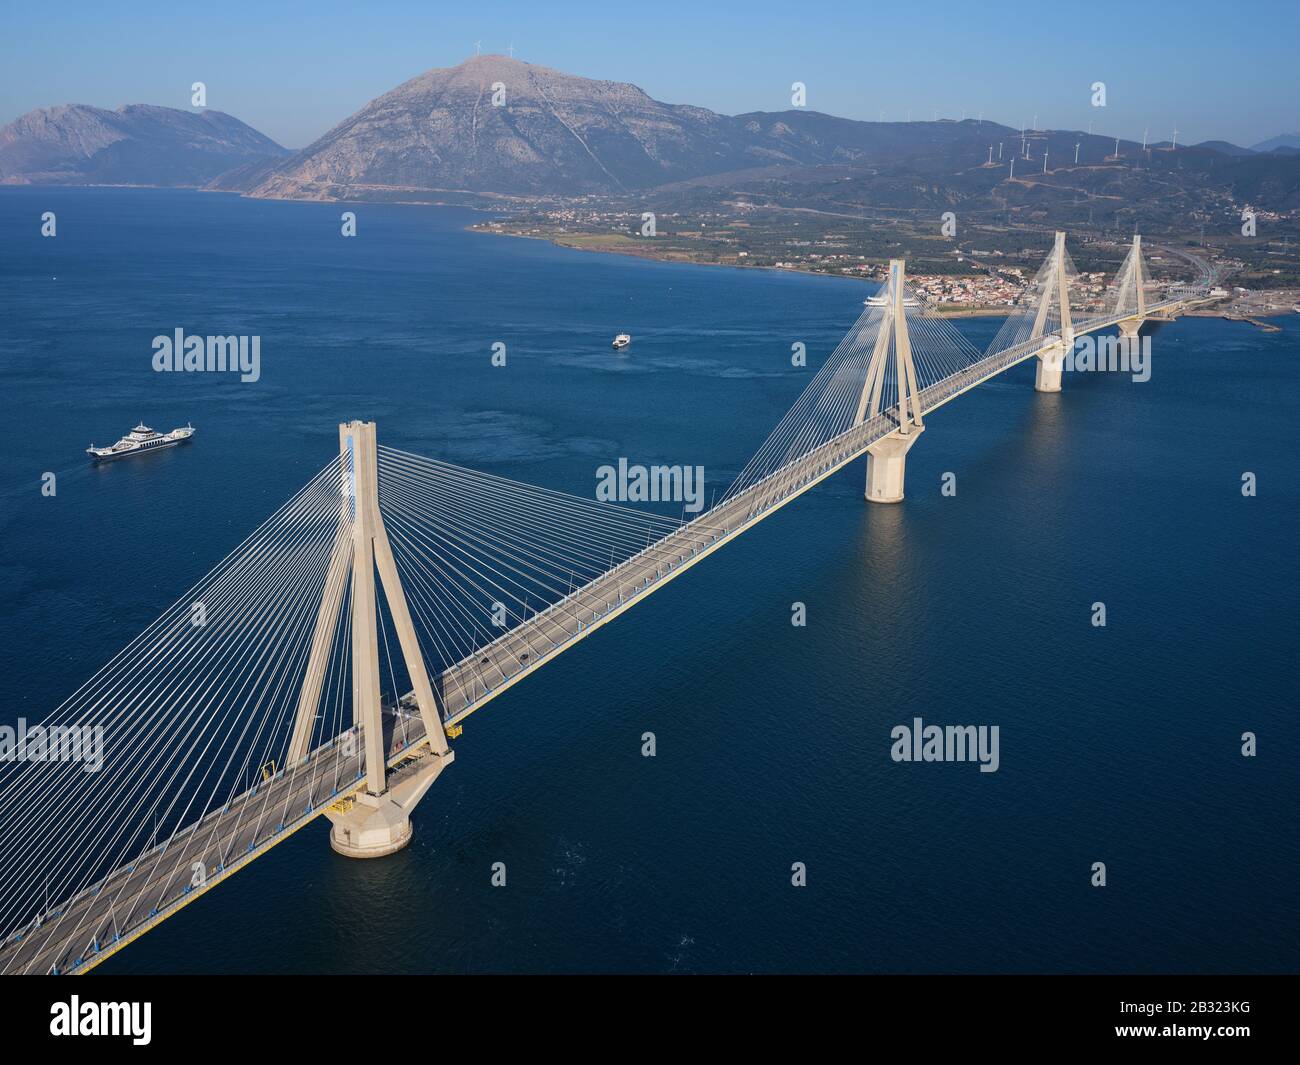 VISTA AEREA - ampio ponte sospeso a fune che attraversa la parte più stretta del Golfo di Corinto. Tra le città di Rio e Antirio, Grecia. Foto Stock